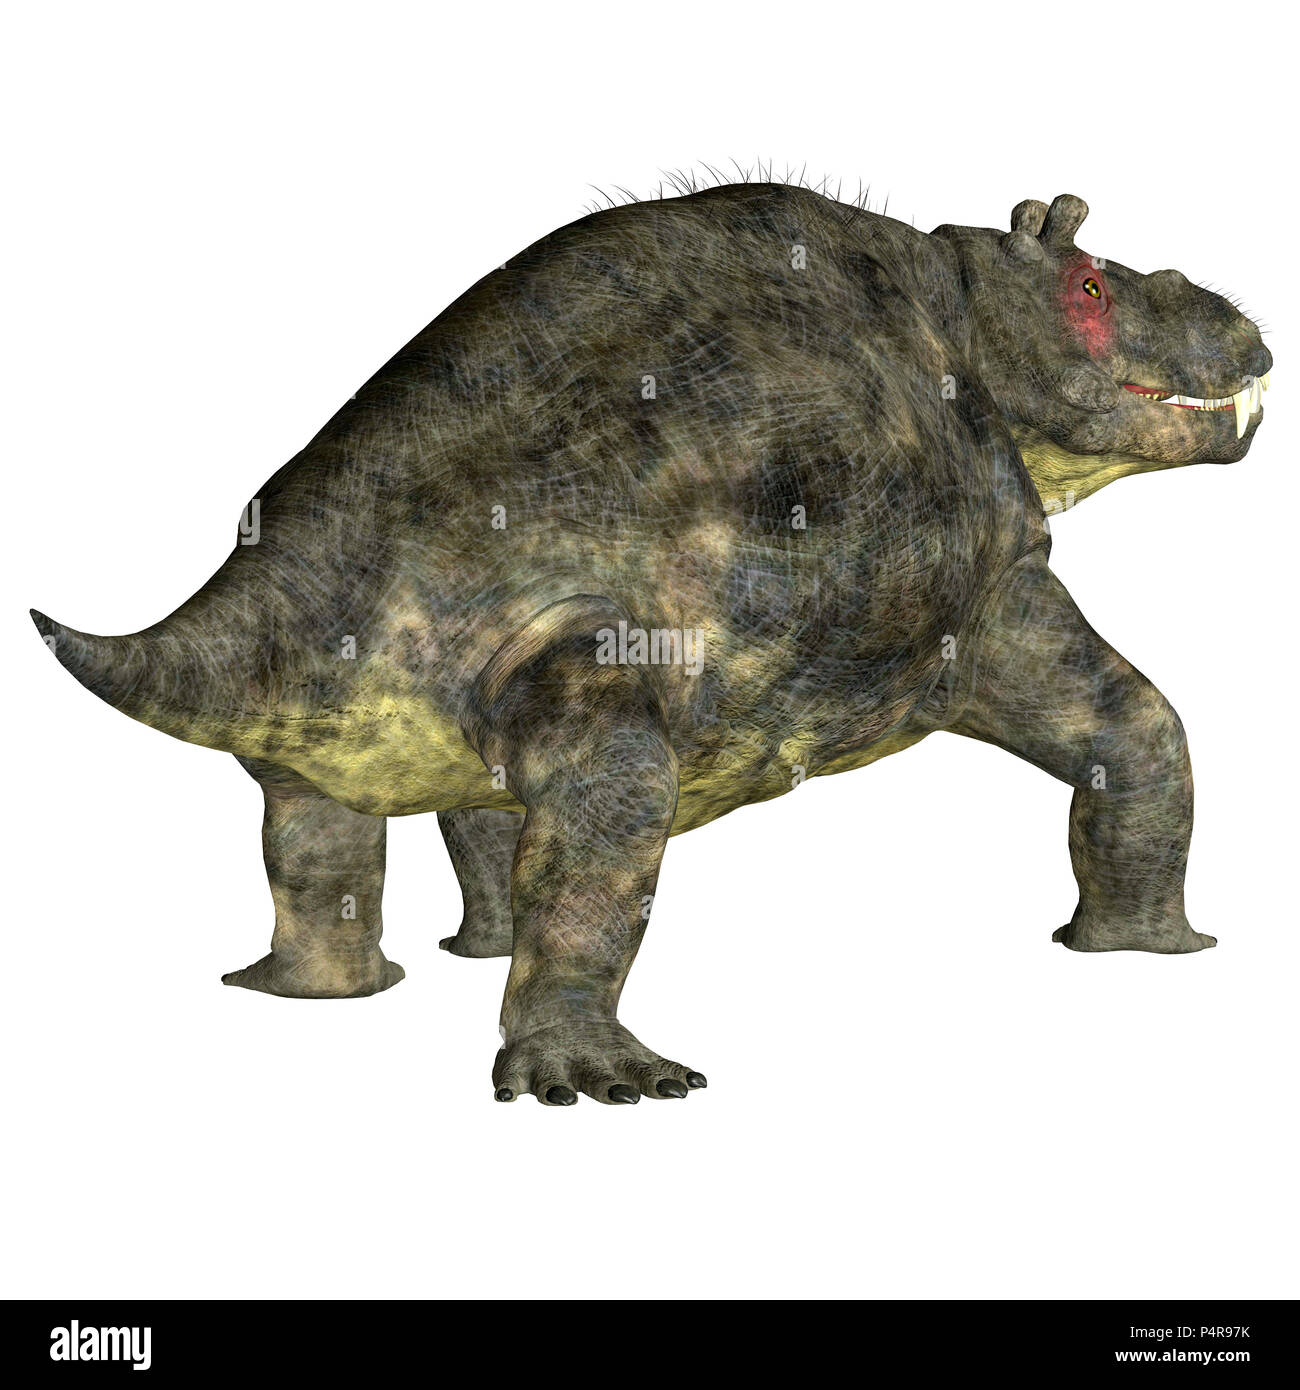 Estemmenosuchus uralensis Dinosaurier Schwanz - Estemmenosuchus uralensis war ein Allesfresser therapsid Dinosaurier in der Permian Periode in Russland gelebt. Stockfoto